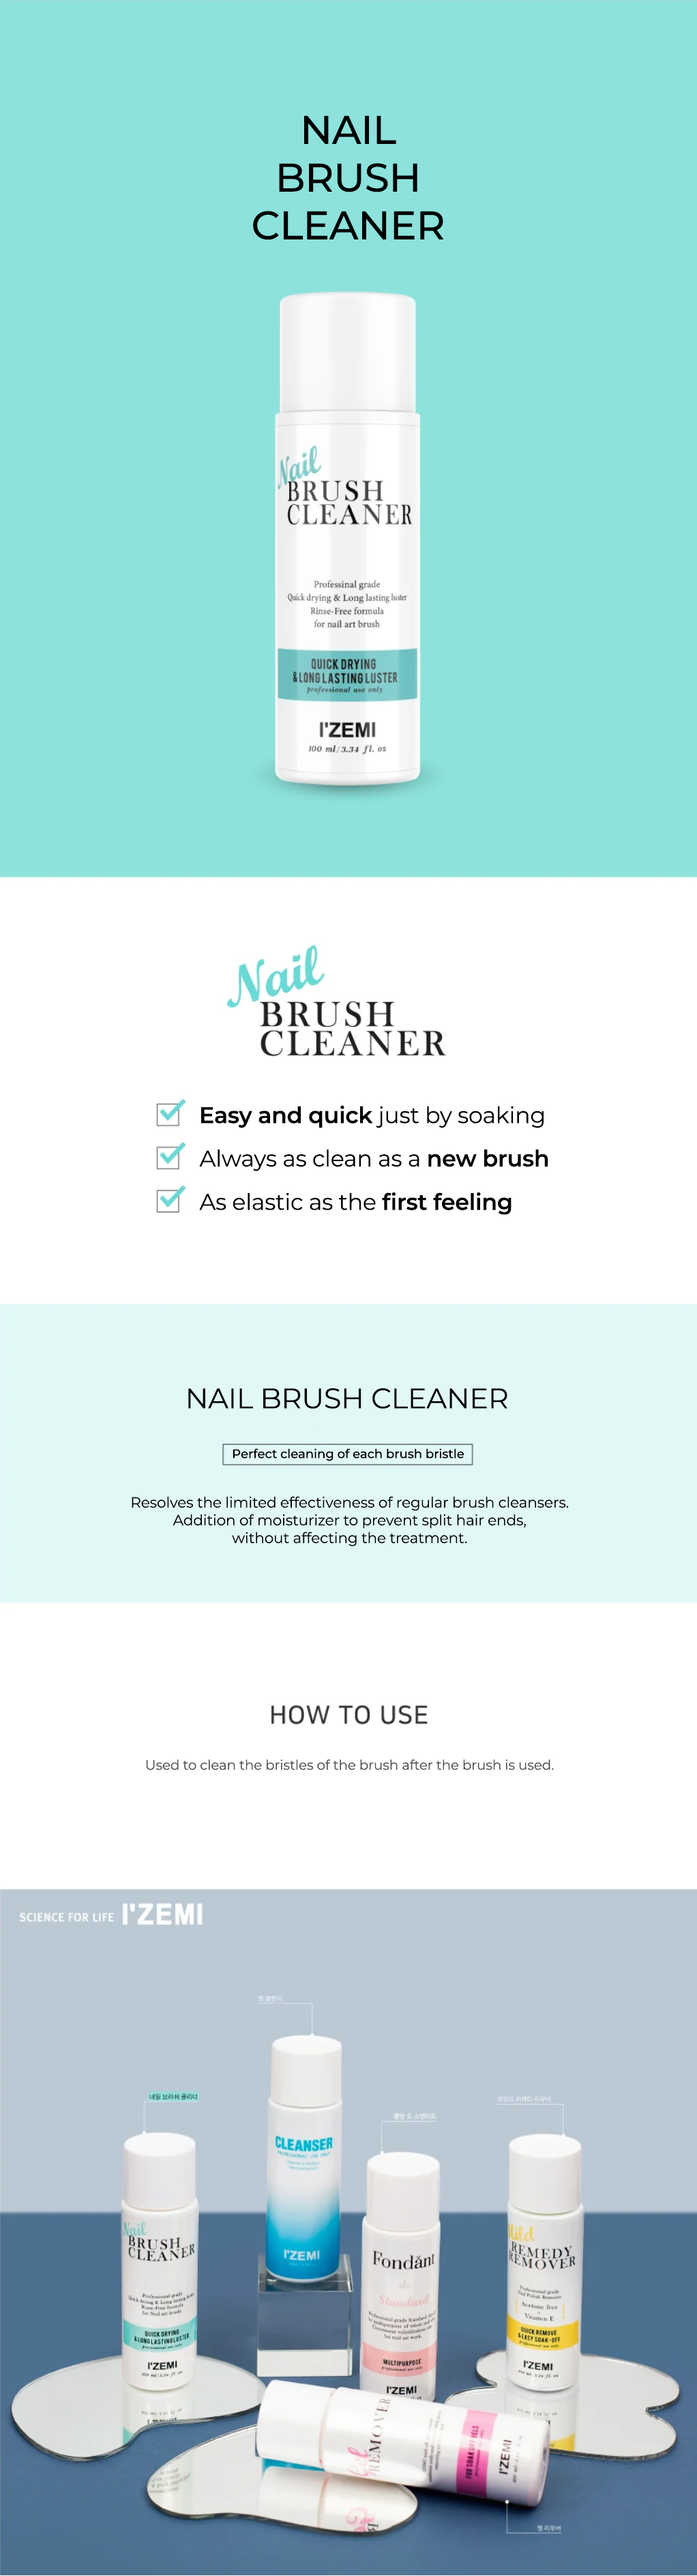 Izemi Nail Brush Cleaner